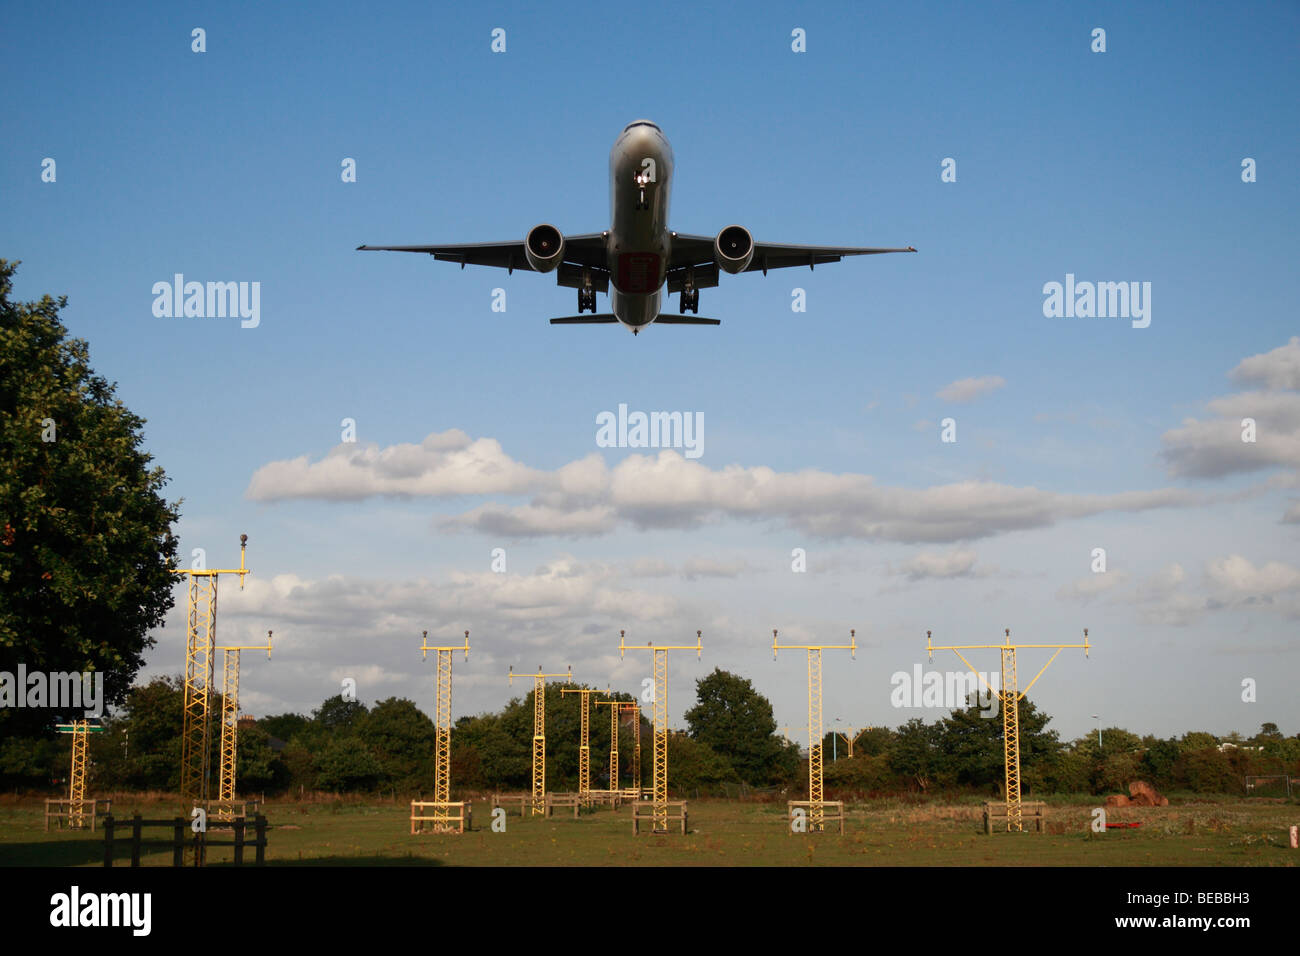 Ein Flugzeug der Landescheinwerfer überfahren, als er hereinkommt, auf der Süd-Landebahn am Londoner Flughafen Heathrow, Vereinigtes Königreich zu landen. Stockfoto